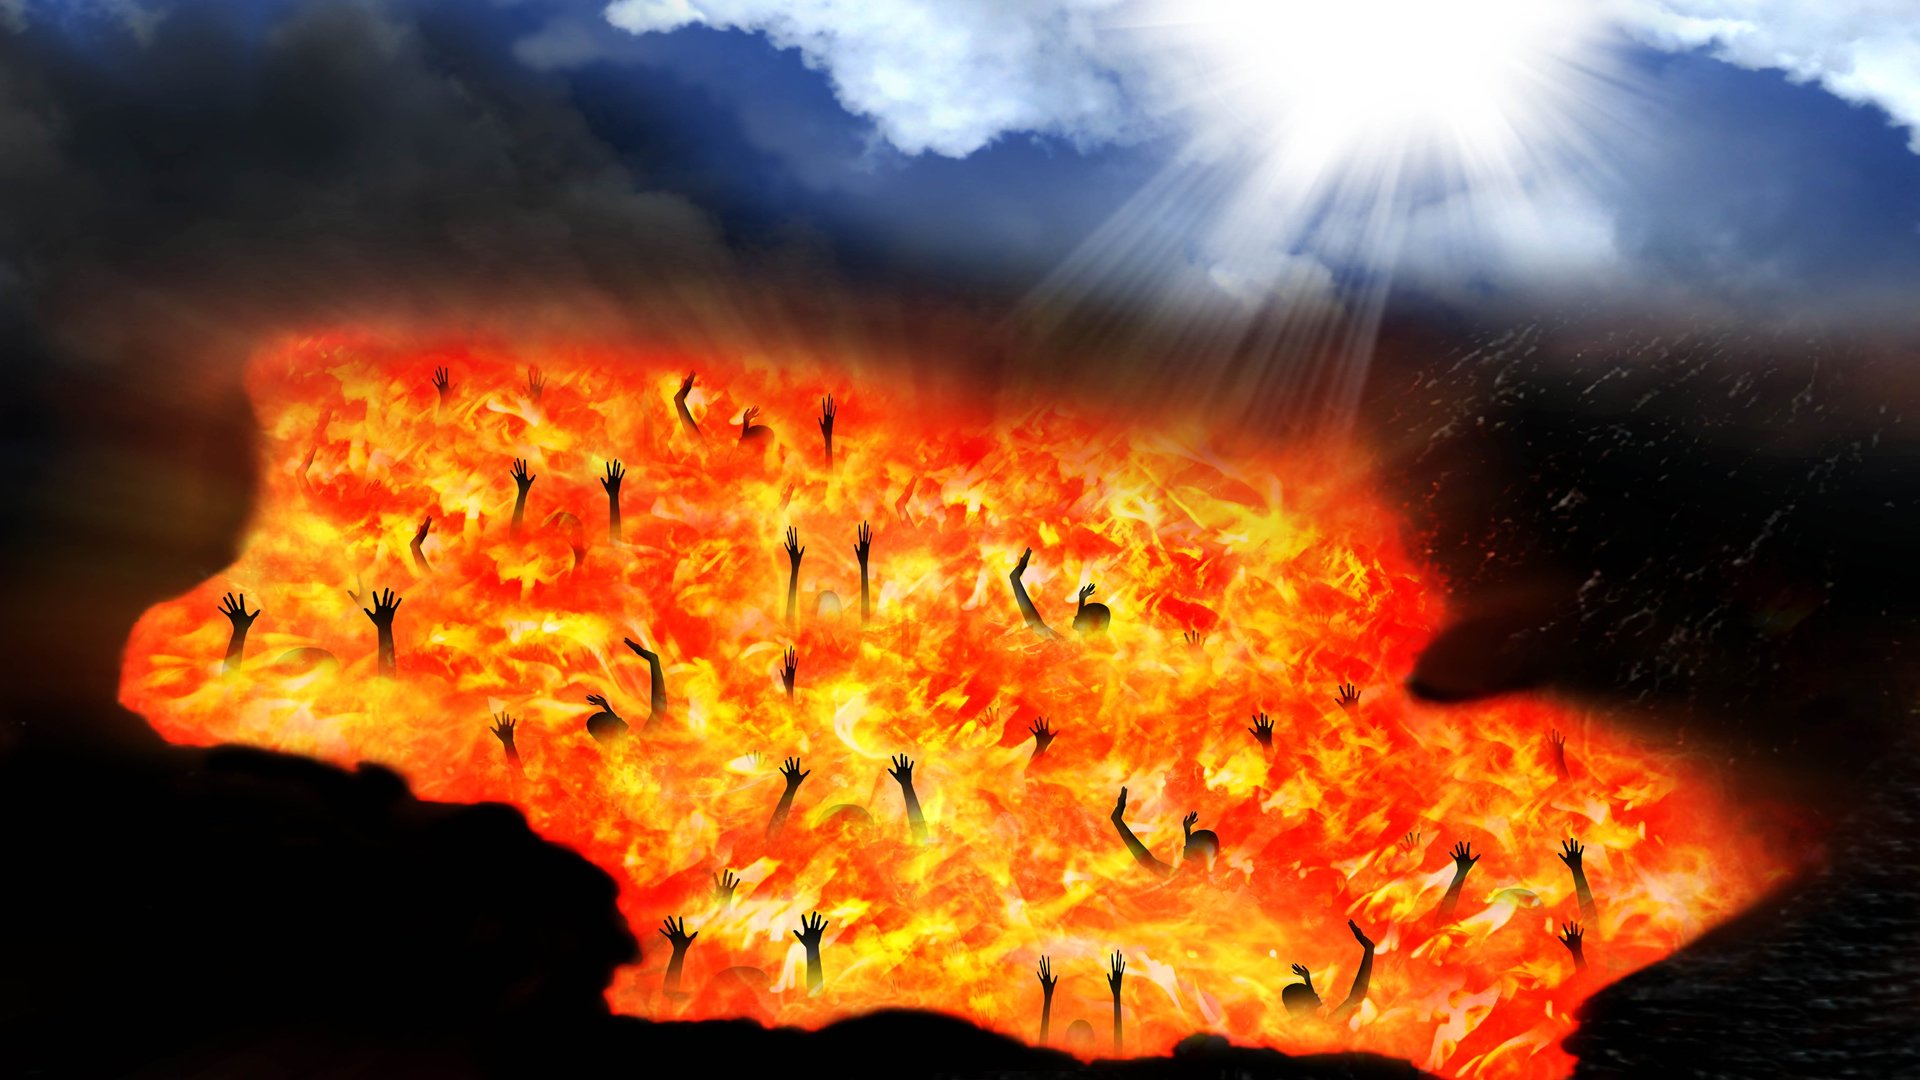 Lucas Banzoli: Qual é o significado do «lago de fogo» do Apocalipse?